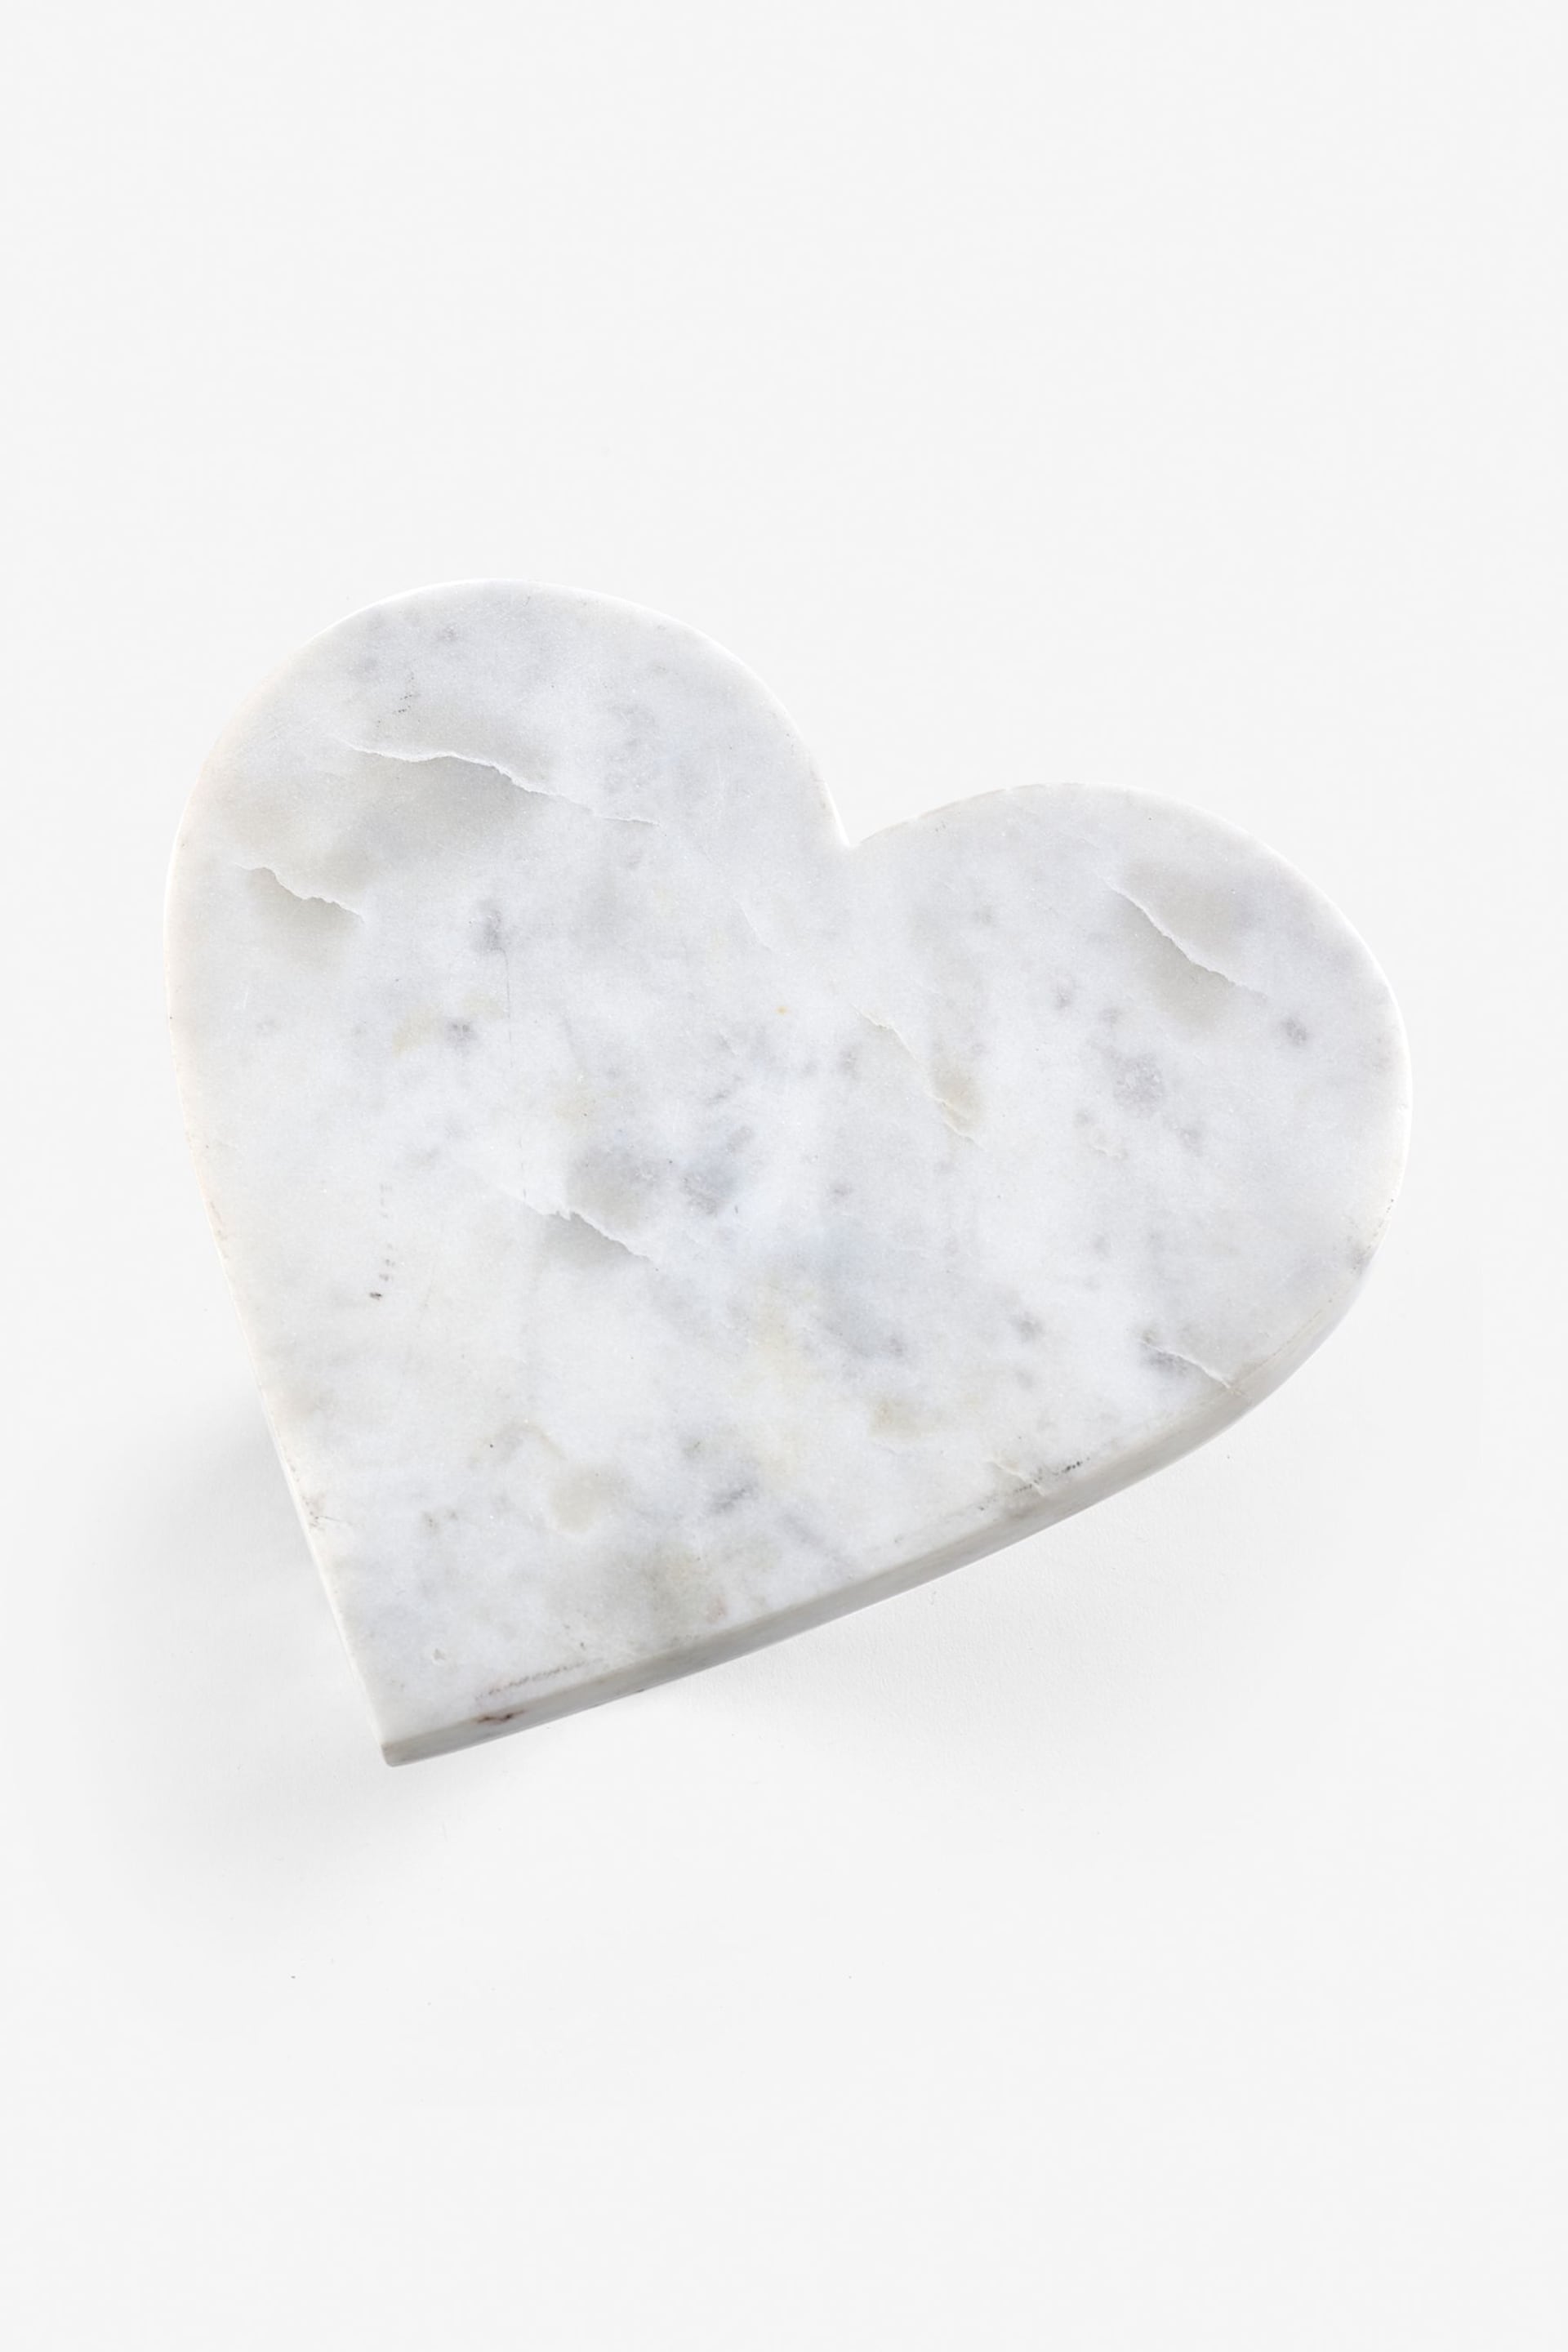 White Marble Heart Trivet - Image 3 of 3